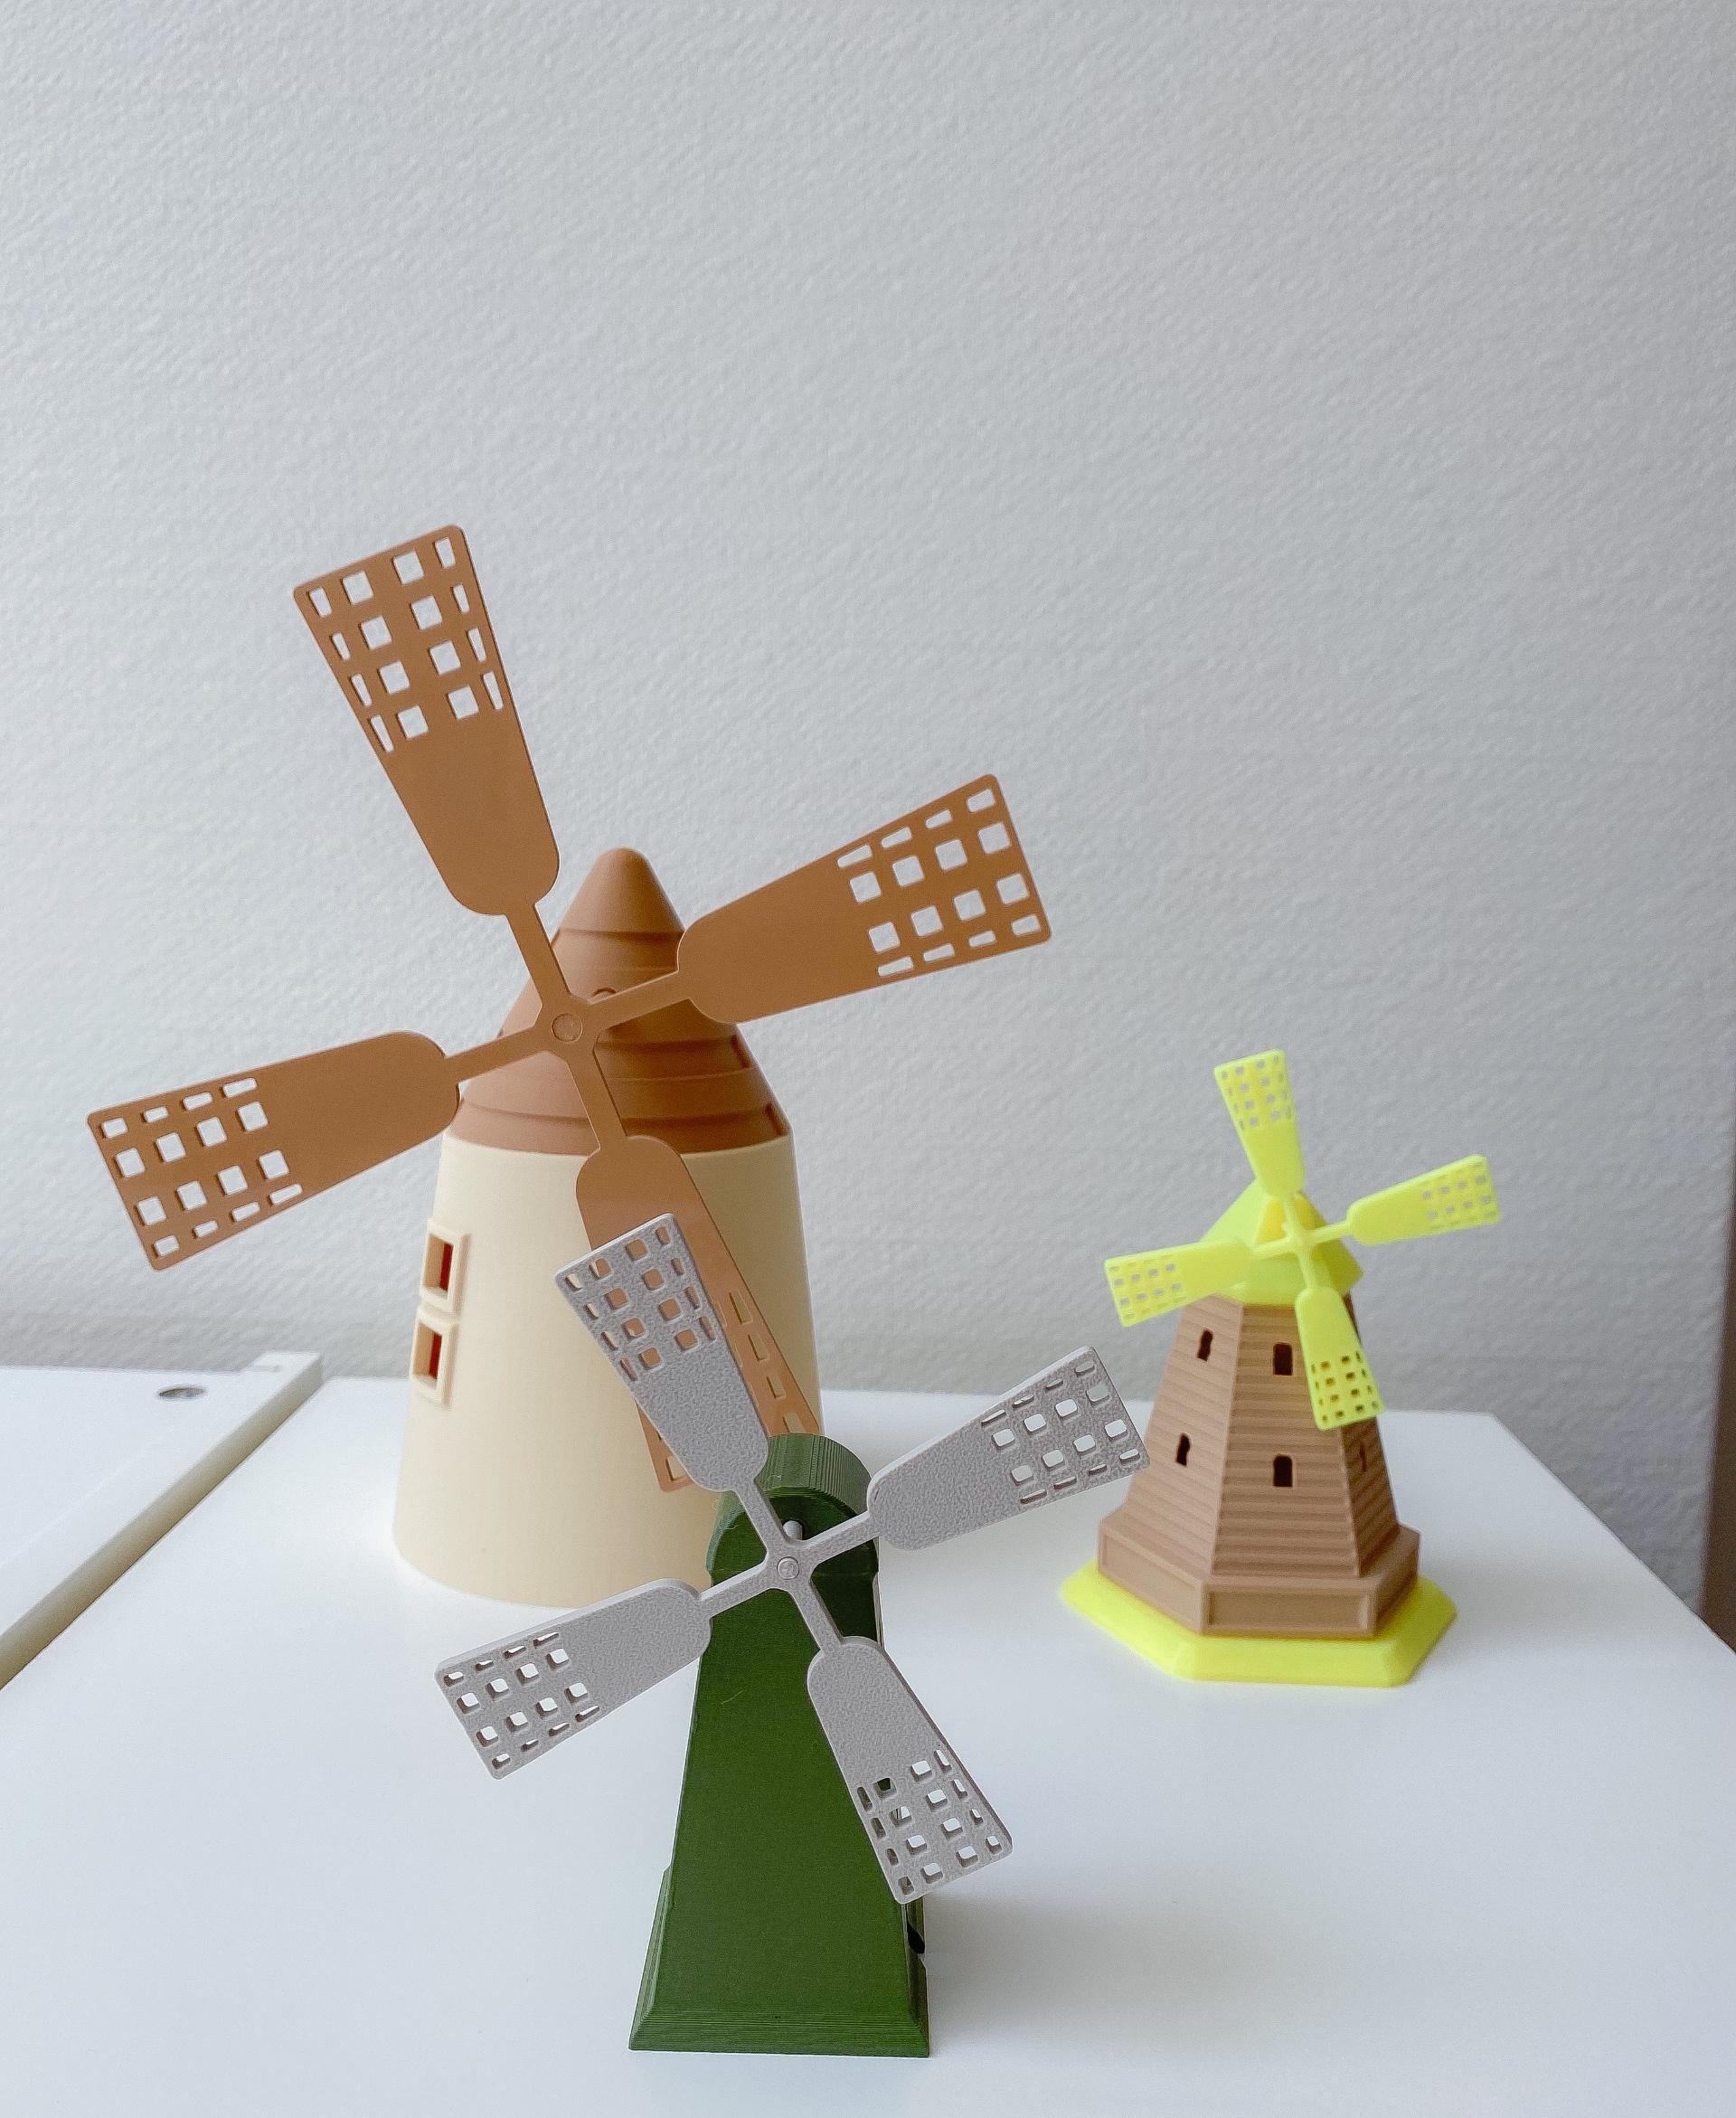 Windmill 7.7 - Beautiful windmills!
Polymaker filament. - 3d model